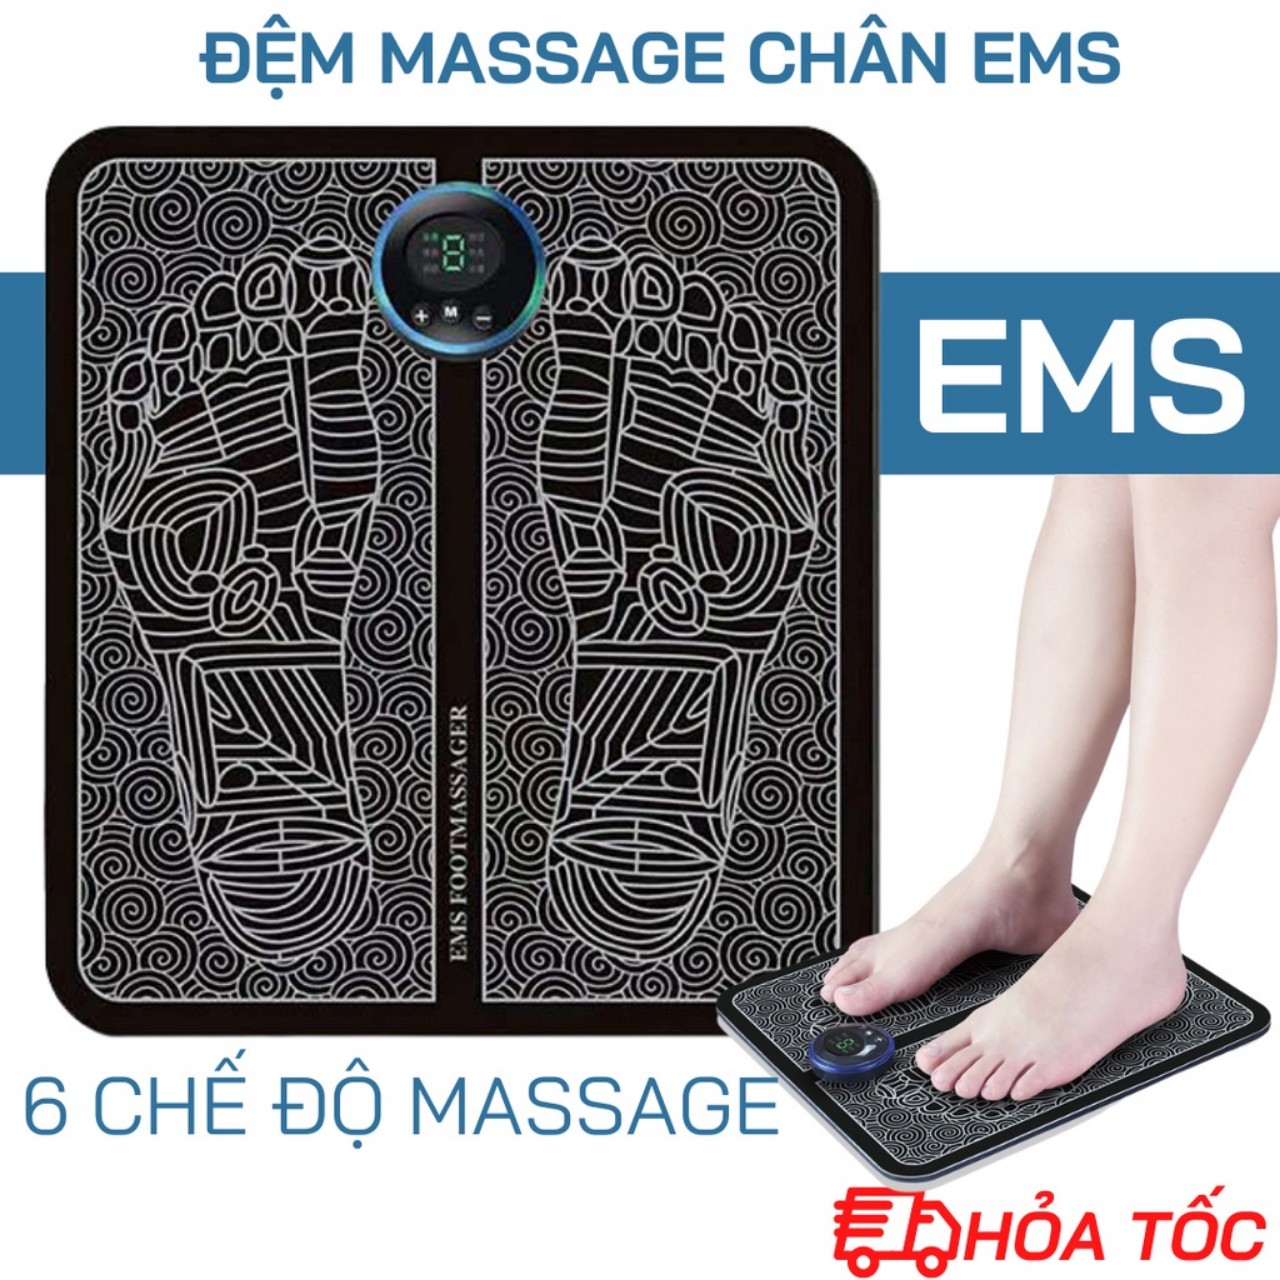 Thảm Massage Chân Xung Điện EMS LED Hiển Thị, 6 chế độ xoa bóp Bàn Chân, Giúp tuần hoàn Khí Huyết, đỡ đau Mỏi